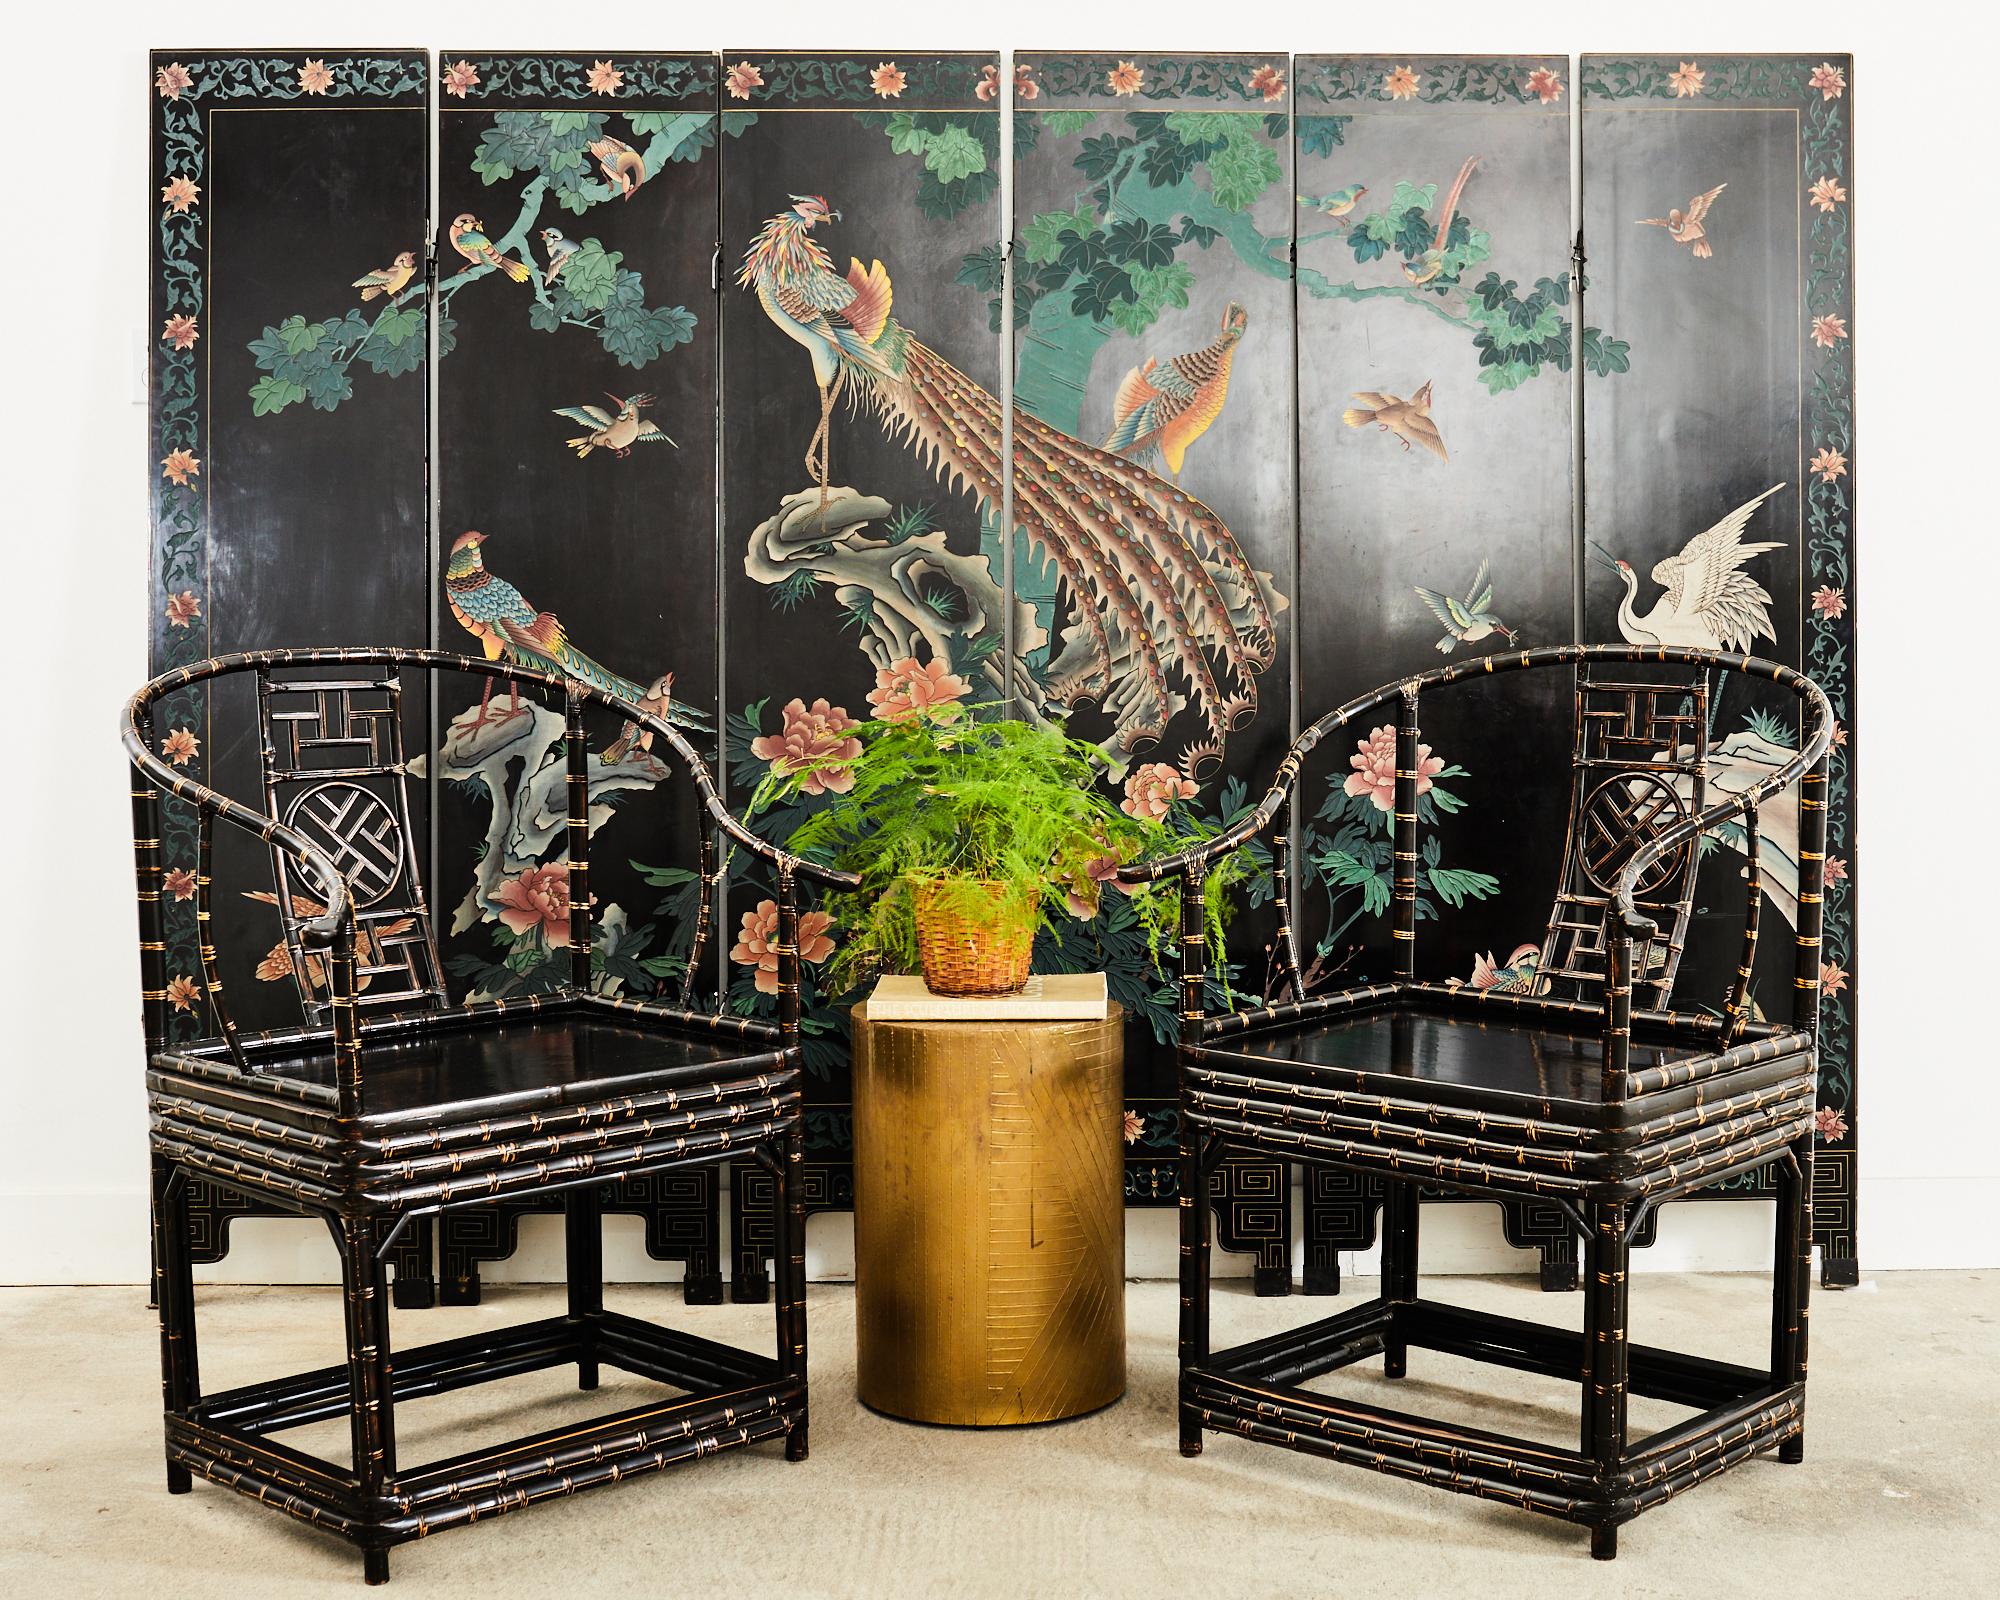 Stilisierter chinesischer Export-Koromandel-Bildschirm des 20. Jahrhunderts, der eine exotische Vogellandschaft darstellt. Die Vorderseite des sechsteiligen Bildschirms wird von einem großen mythischen Vogel mit farbenfrohem Gefieder zentriert.